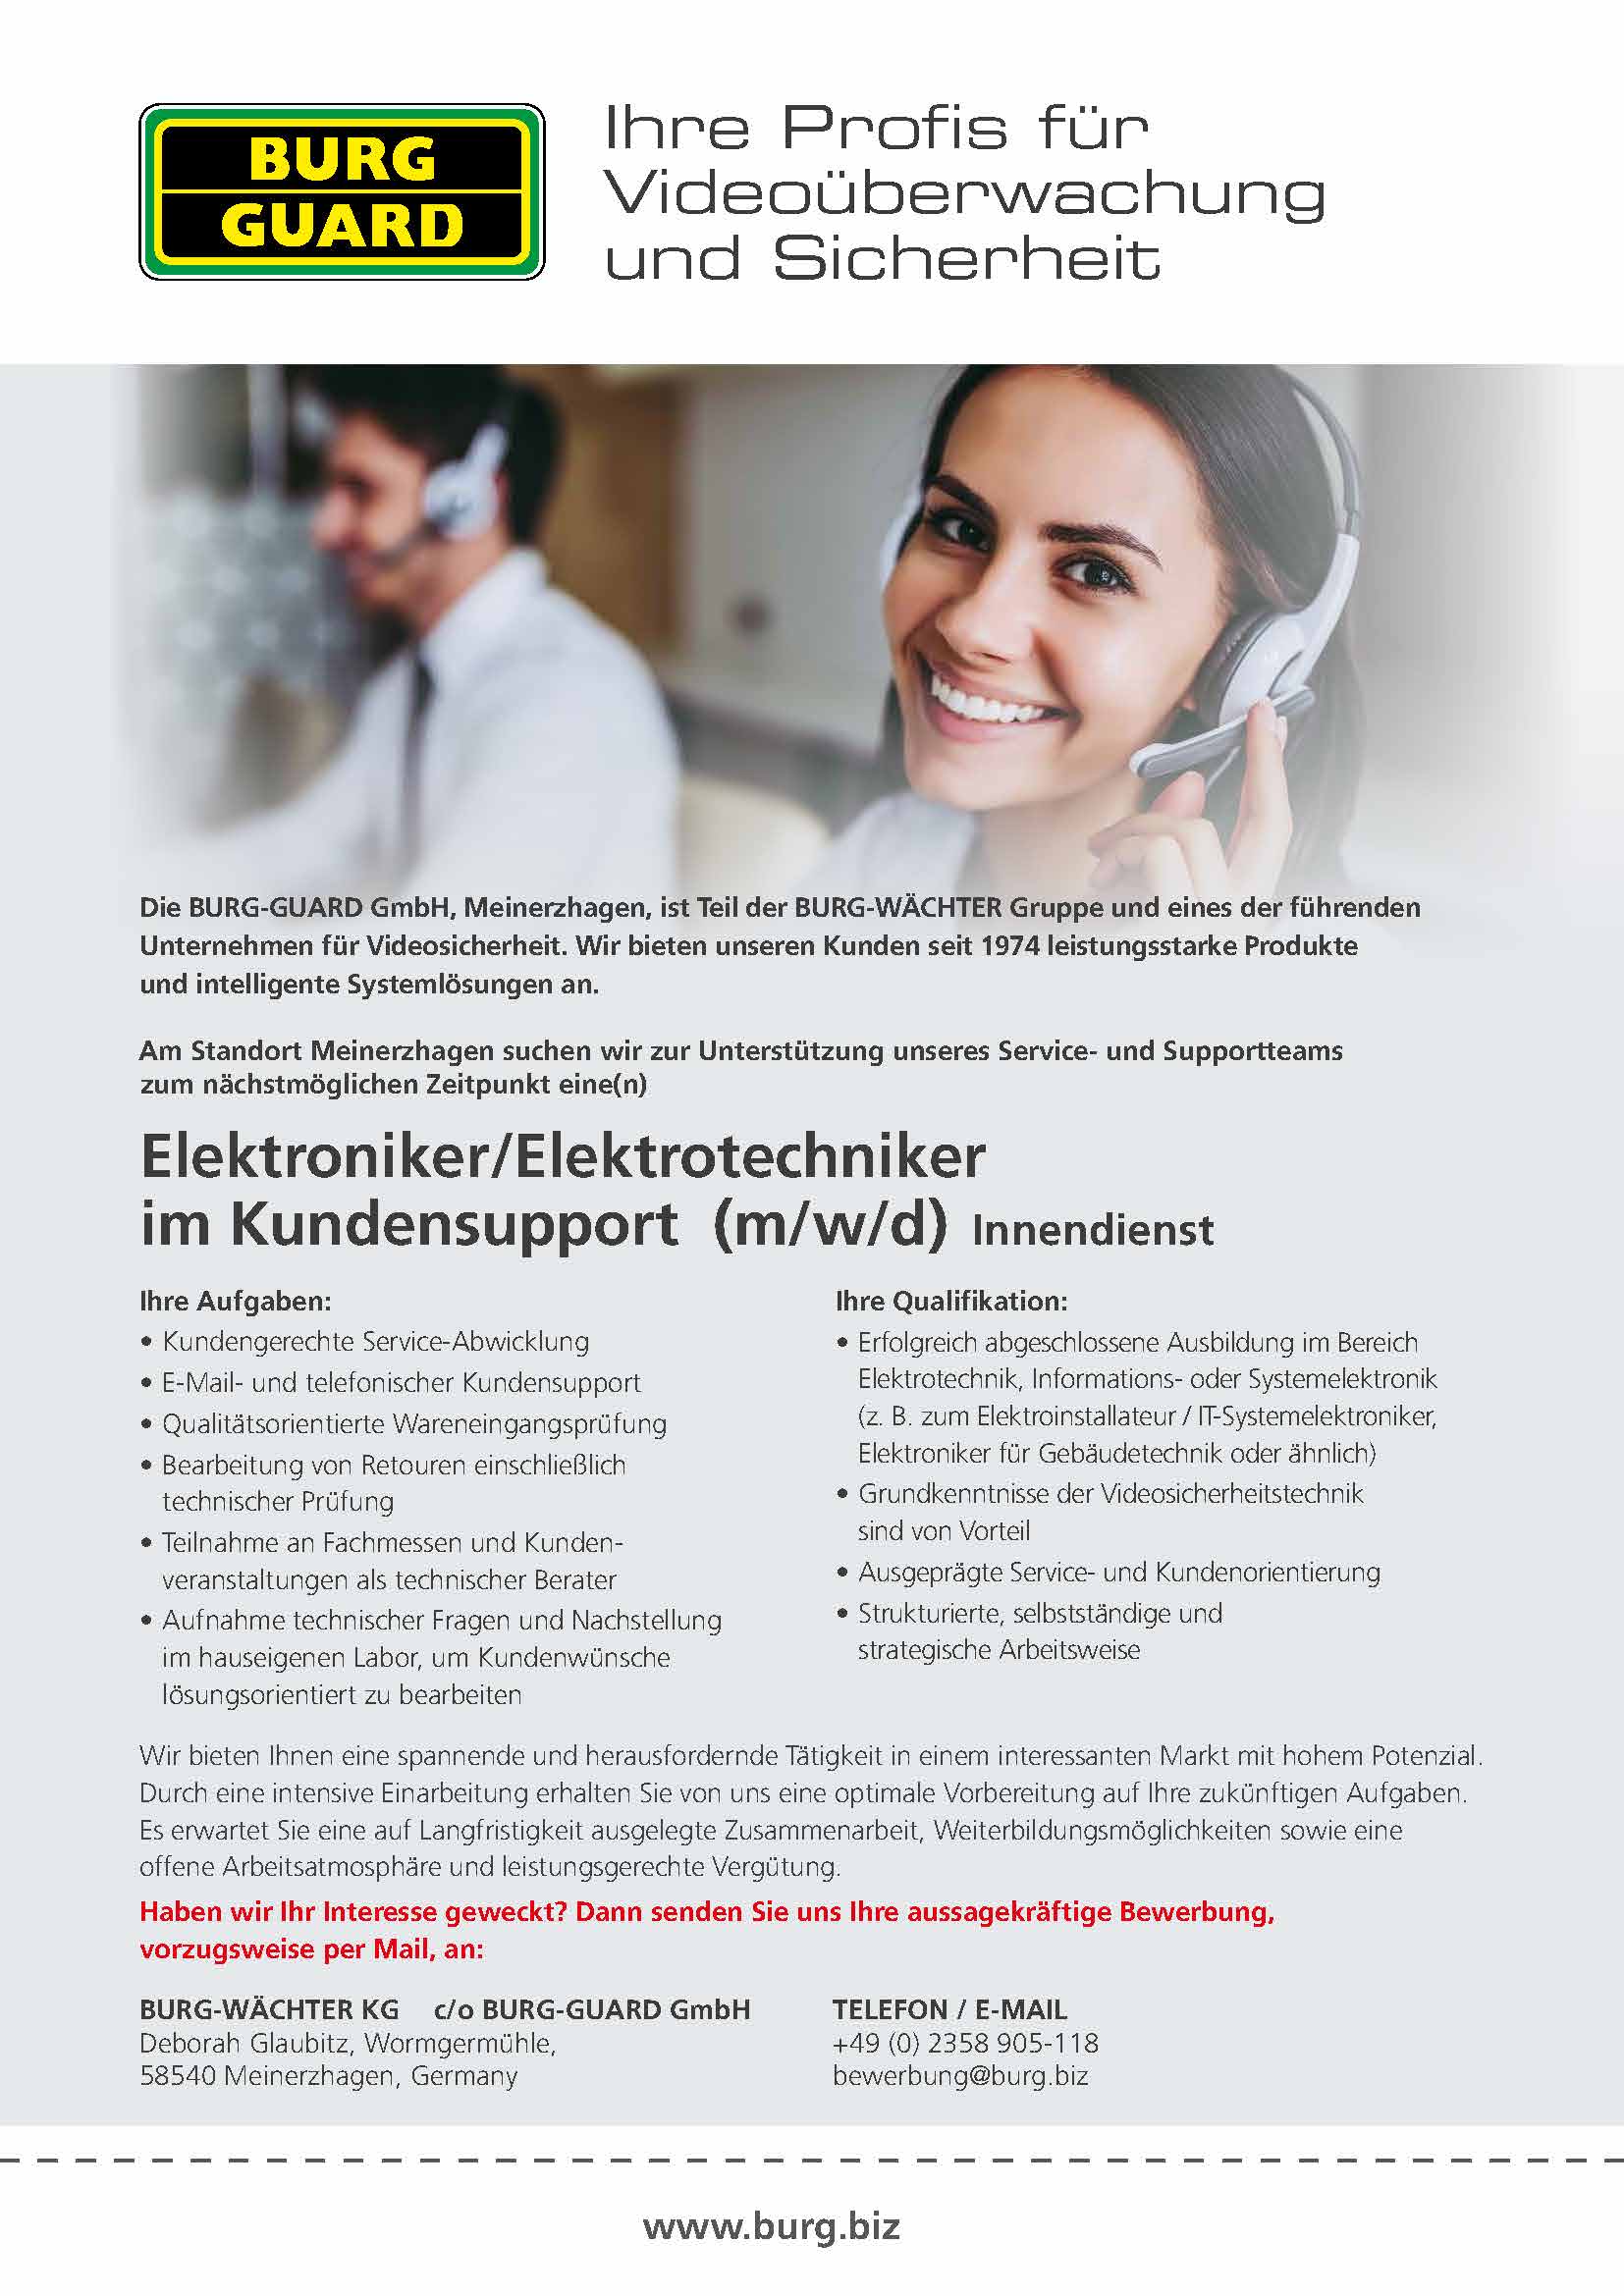 BURG-GUARD Karriere - Stellenausschreibung Elektroniker Elektrotechniker Kundensupport